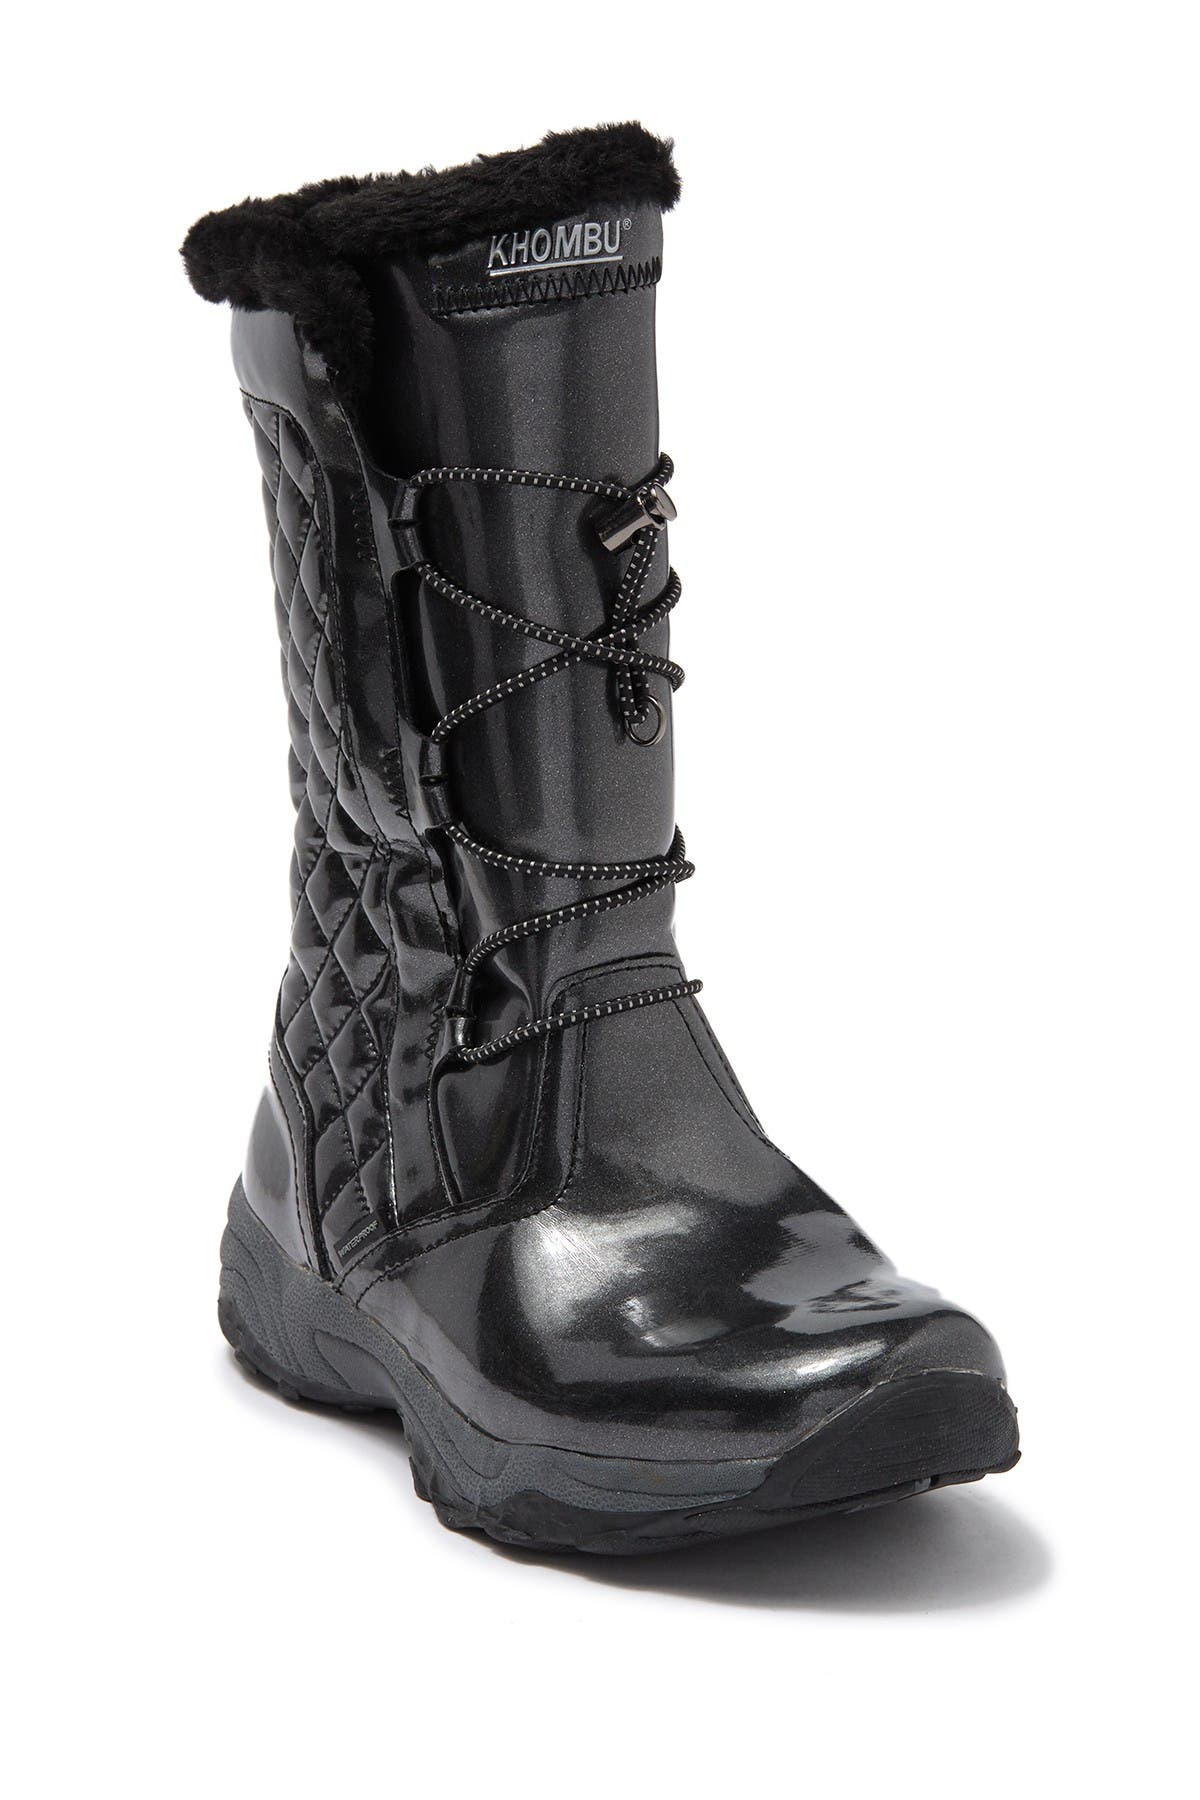 khombu boots for kids